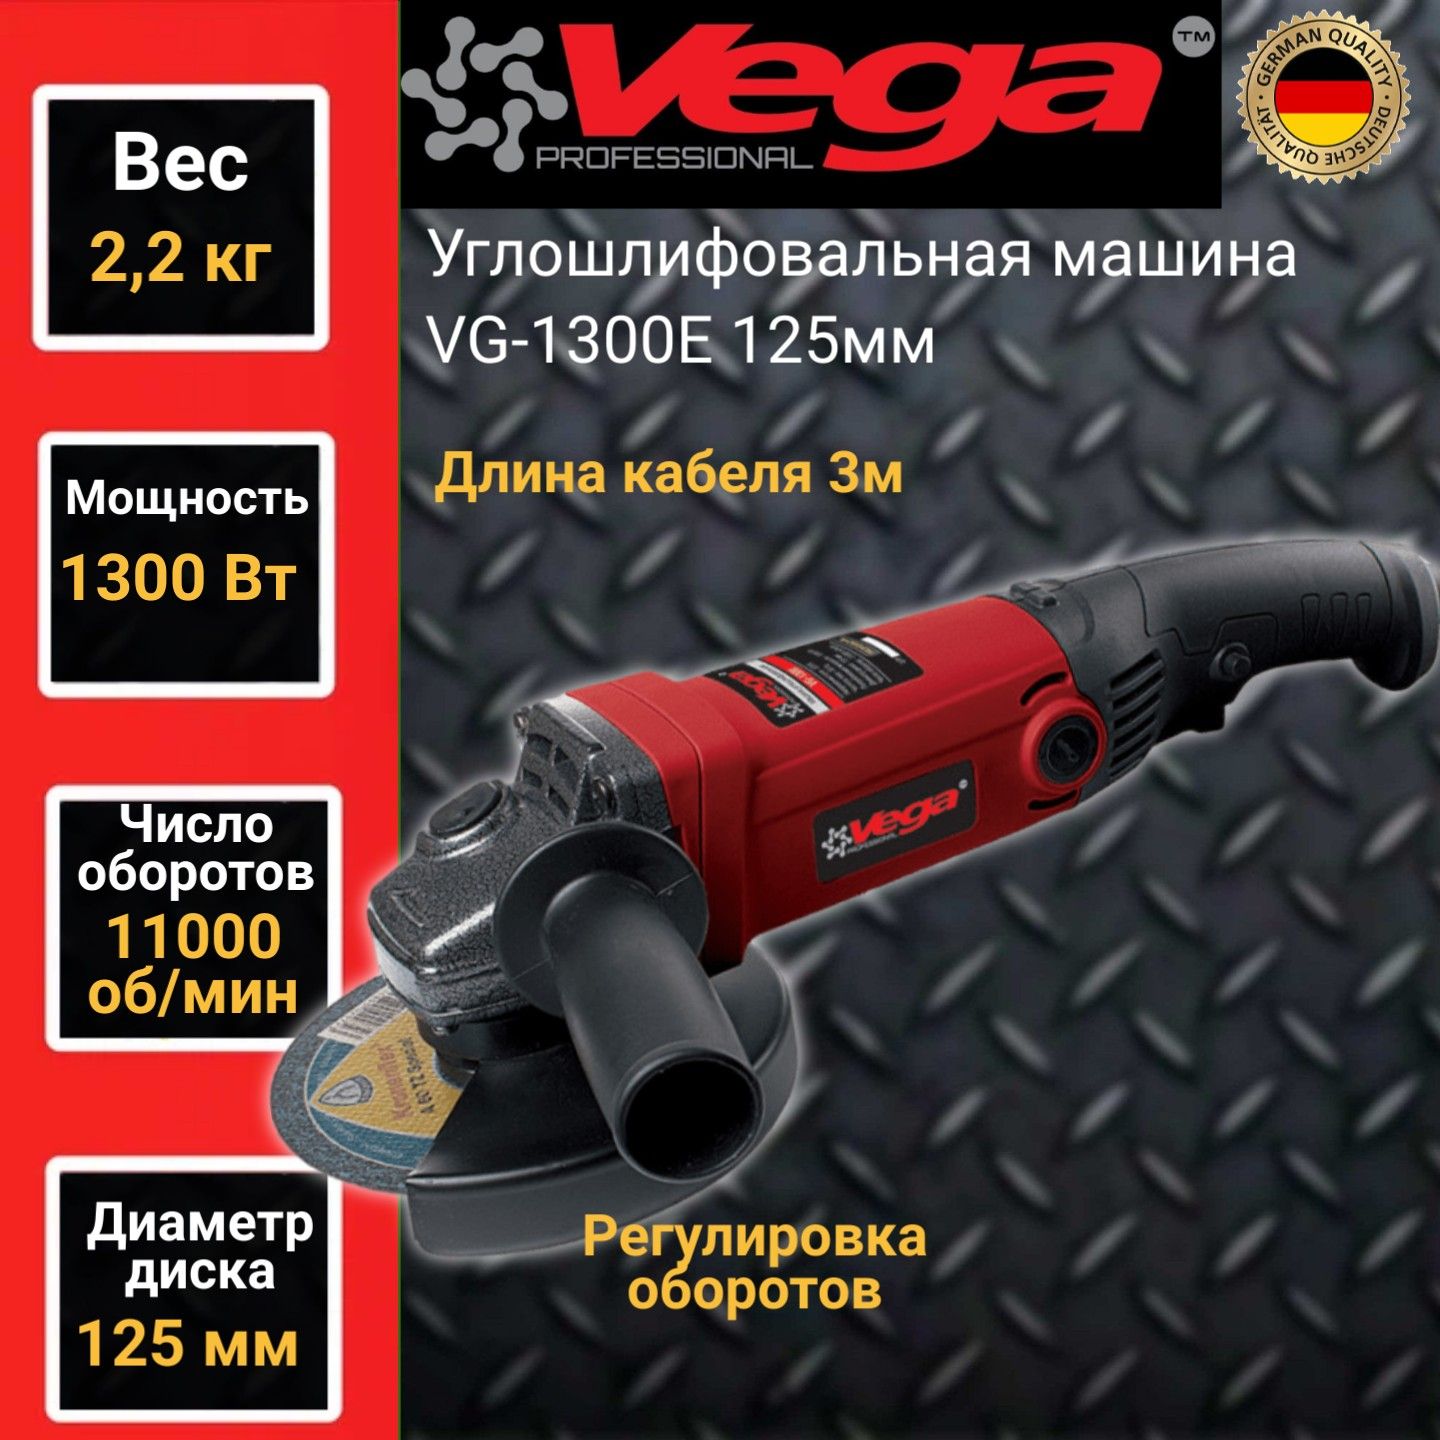 Углошлифовальная машина болгарка Vega Professional VG 1300Е, 125мм круг, 1300Вт,11000об/м углошлифовальная машина ушм 150 1300 ресанта болгарка